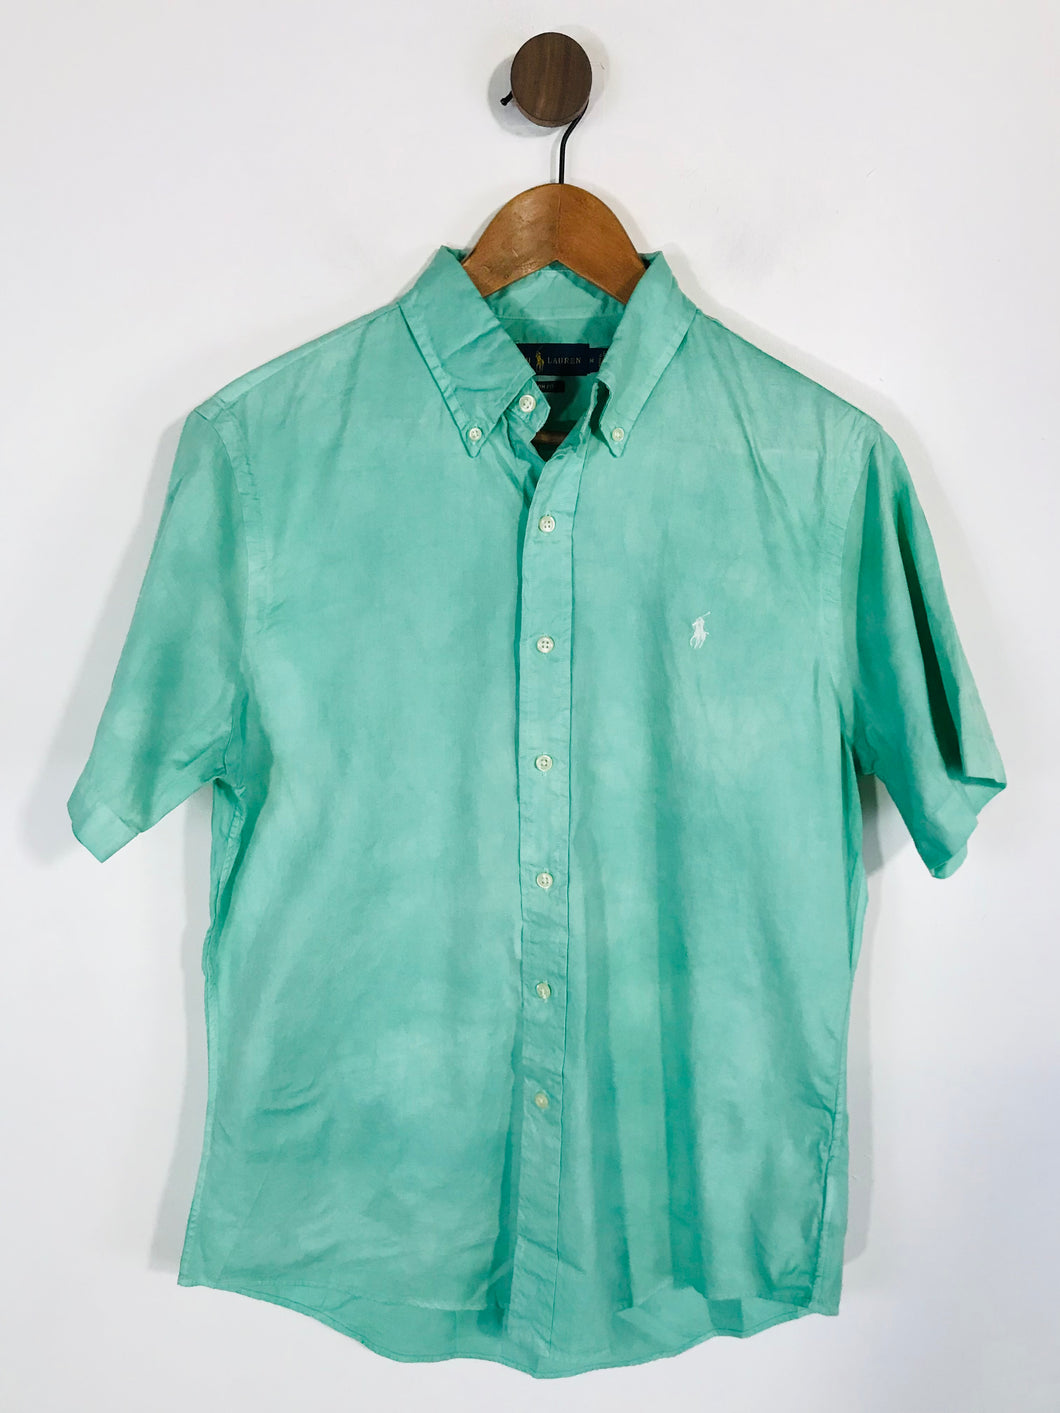 Ralph Lauren Men's Short Sleeve Button-Up Shirt | M | Green